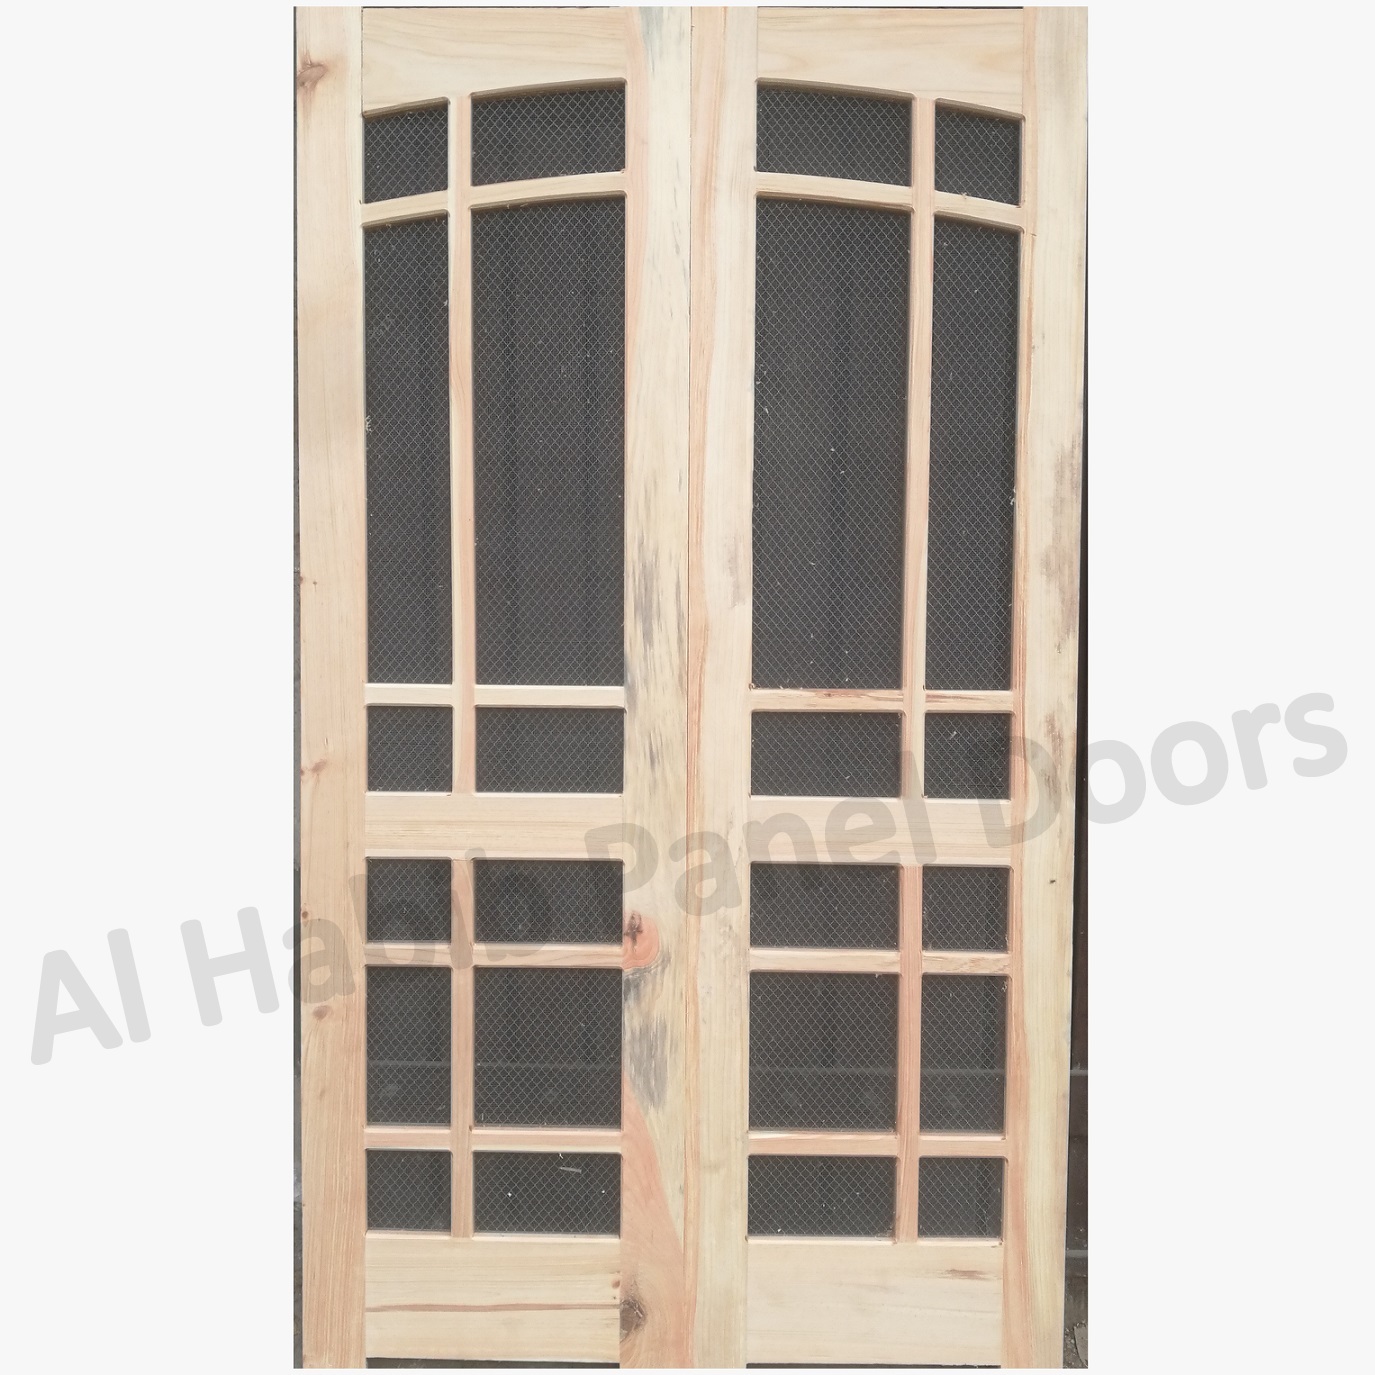 Kail Wood Mesh Panel Double Door